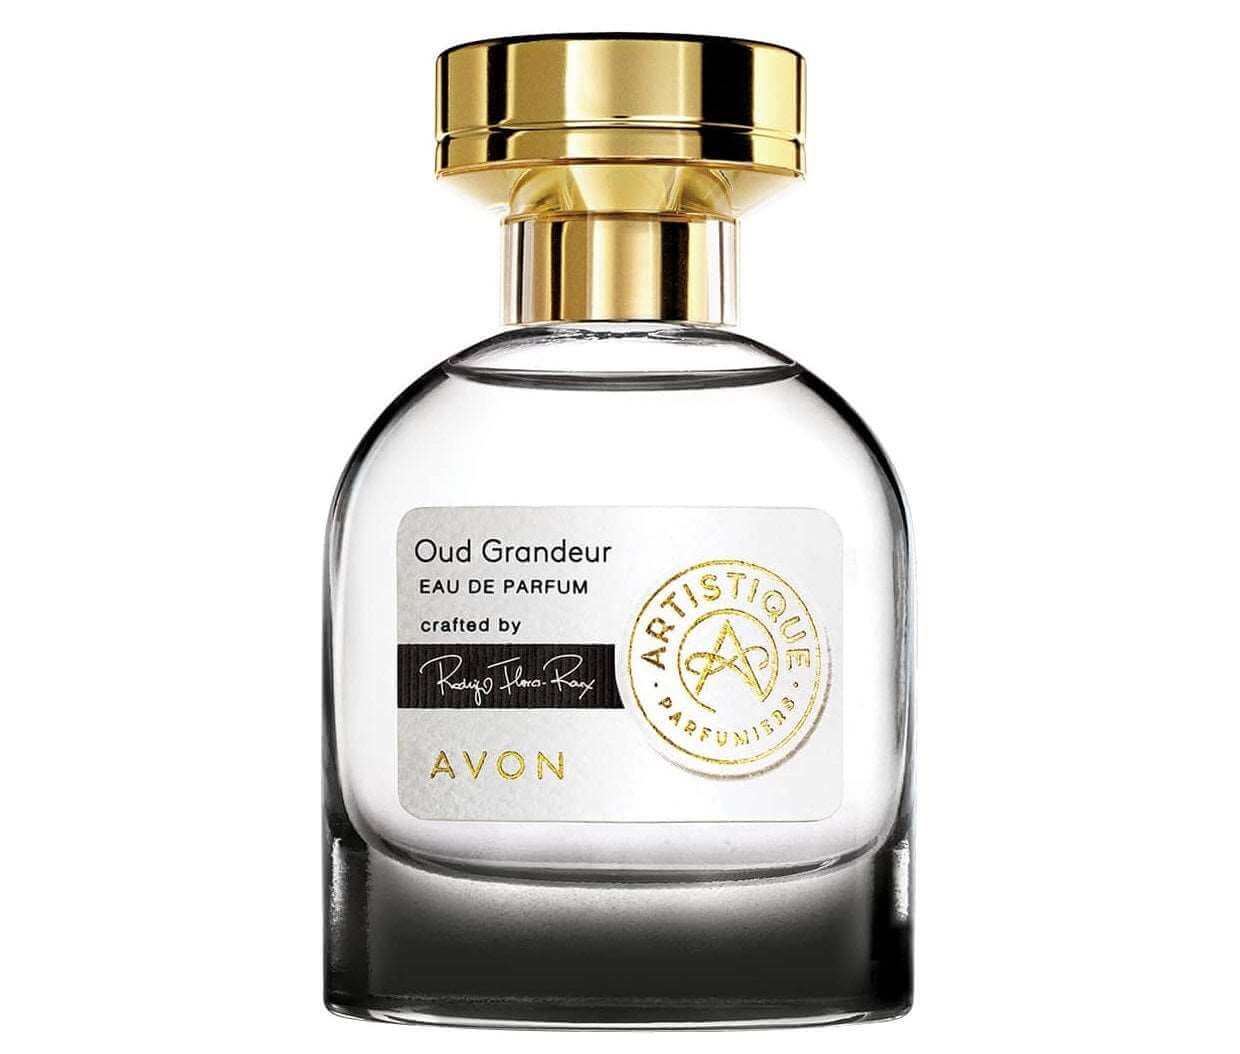 AVON Artistique Oud Grandeur eau de parfum 50 ml